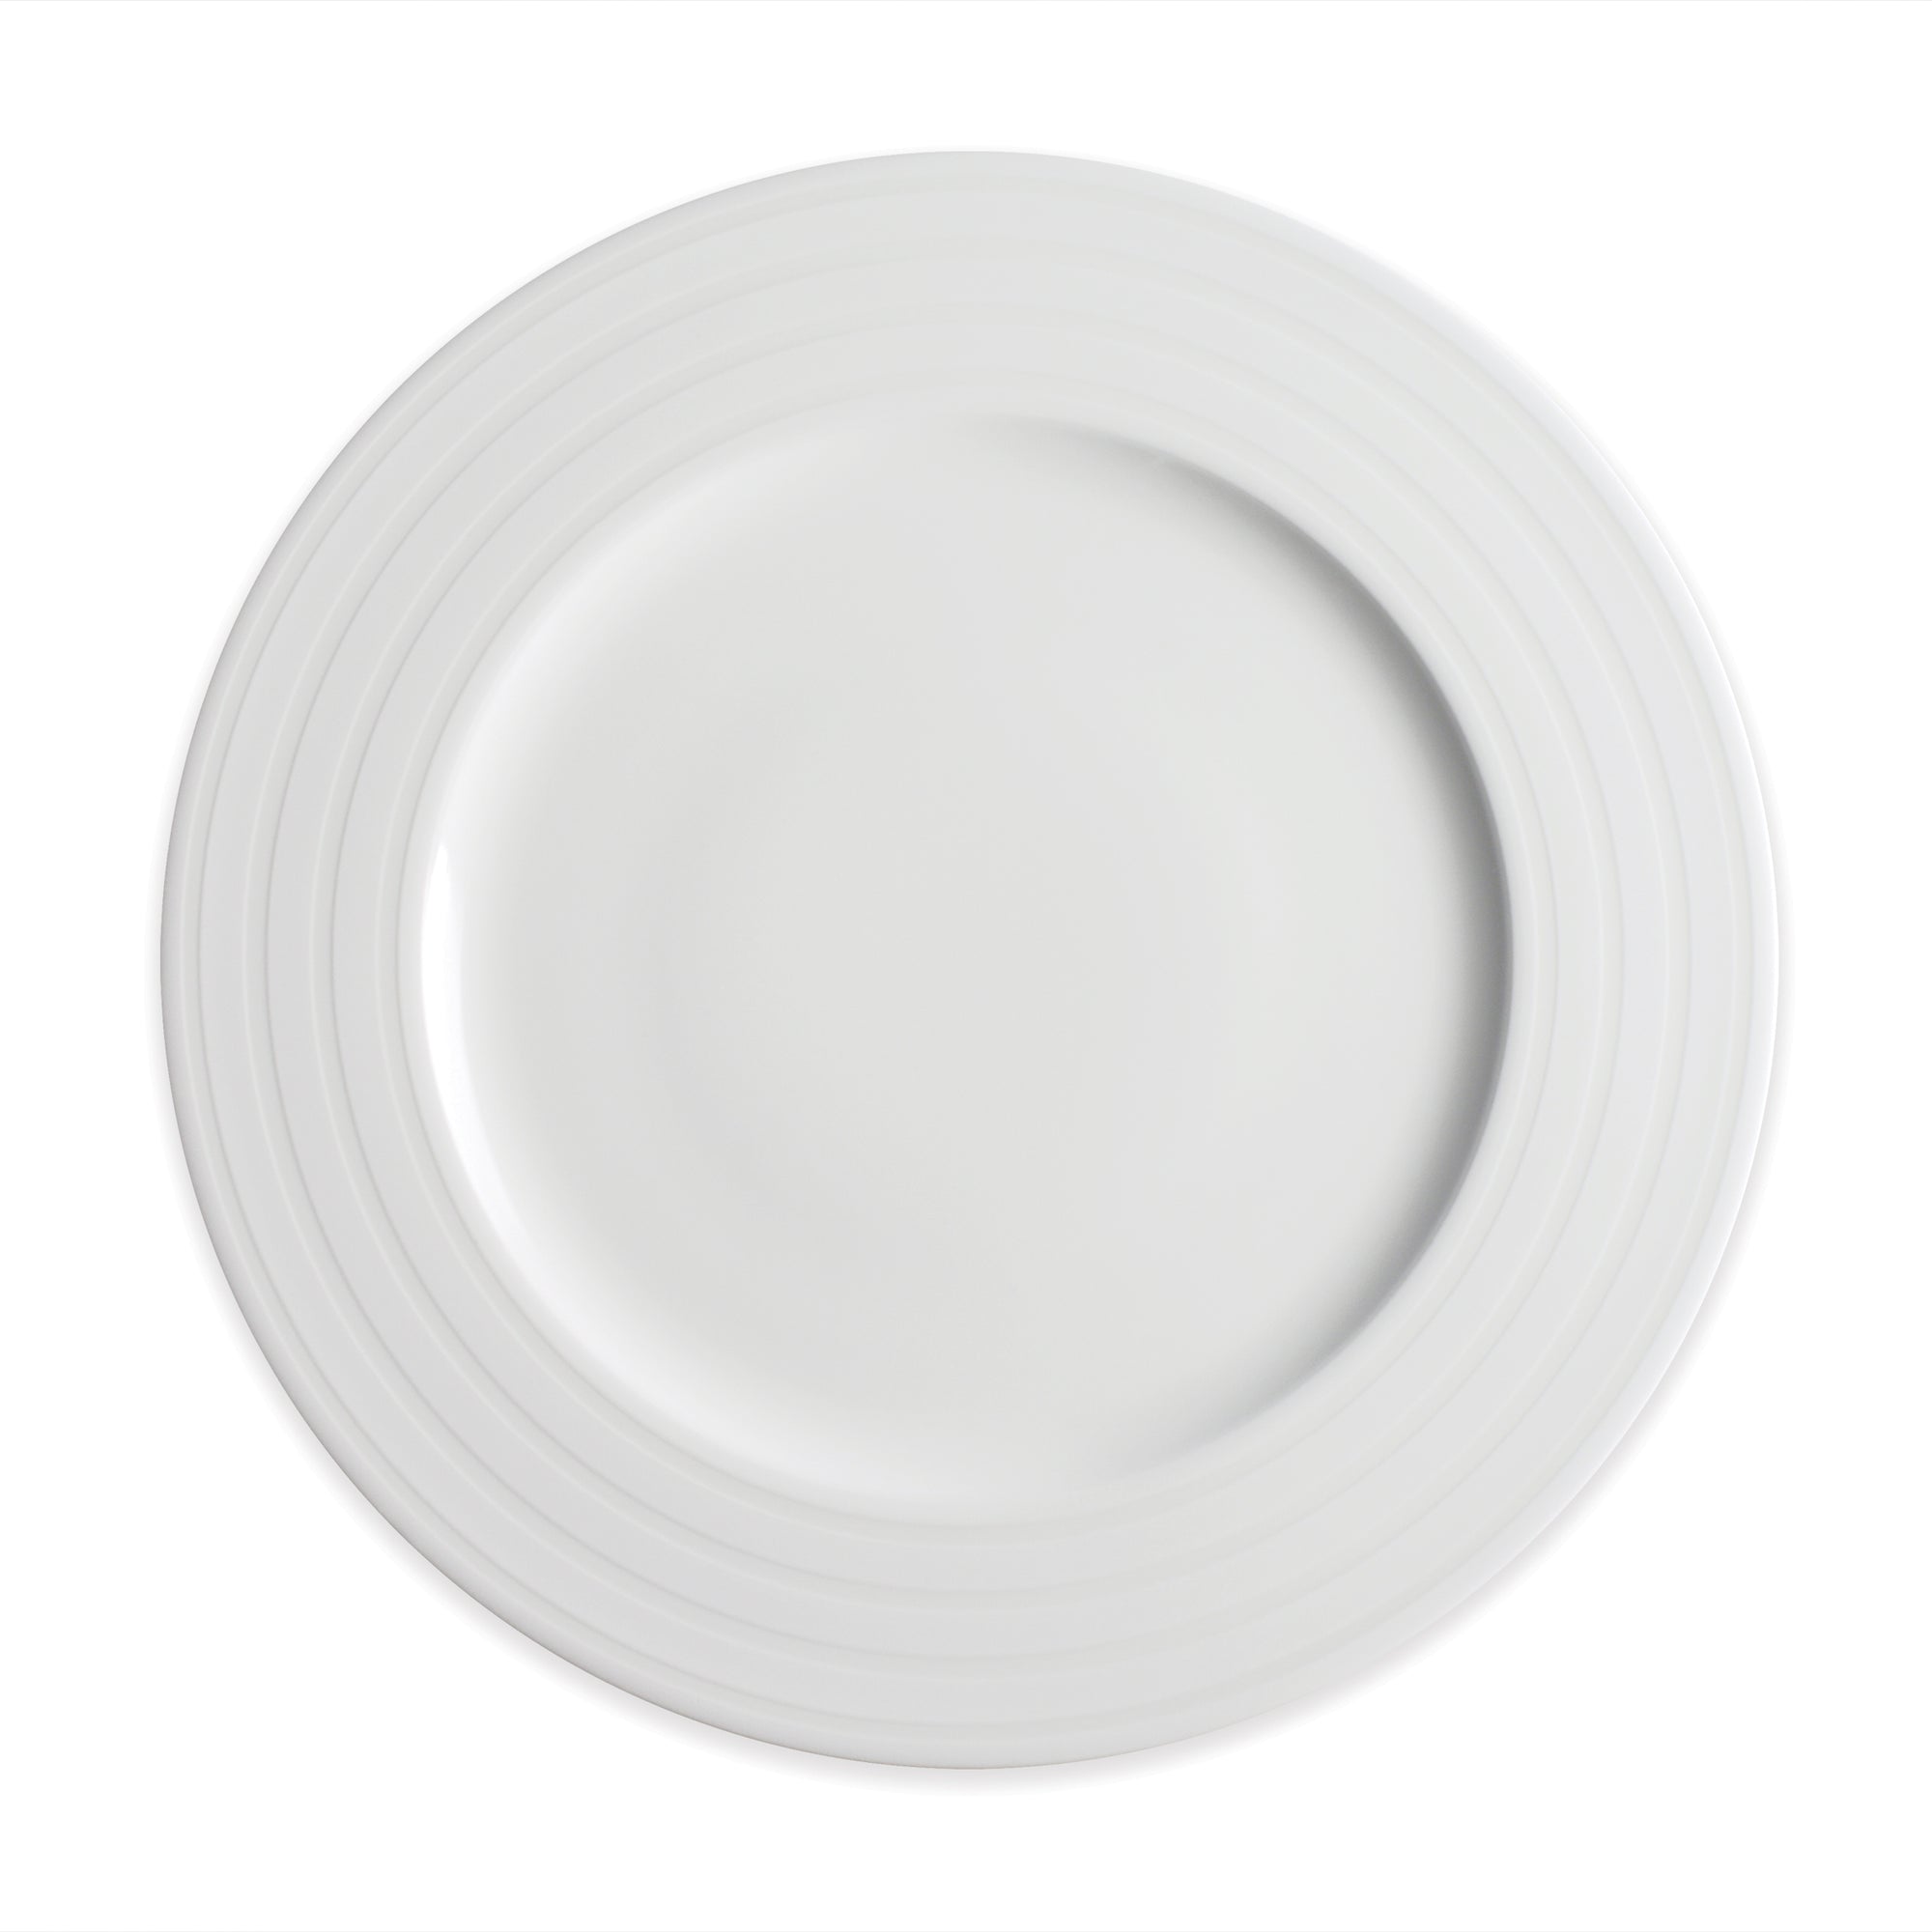 Cambridge Stripe Dinner Plate in raised white on white, high-fired porcelain dinnerware- Caskata